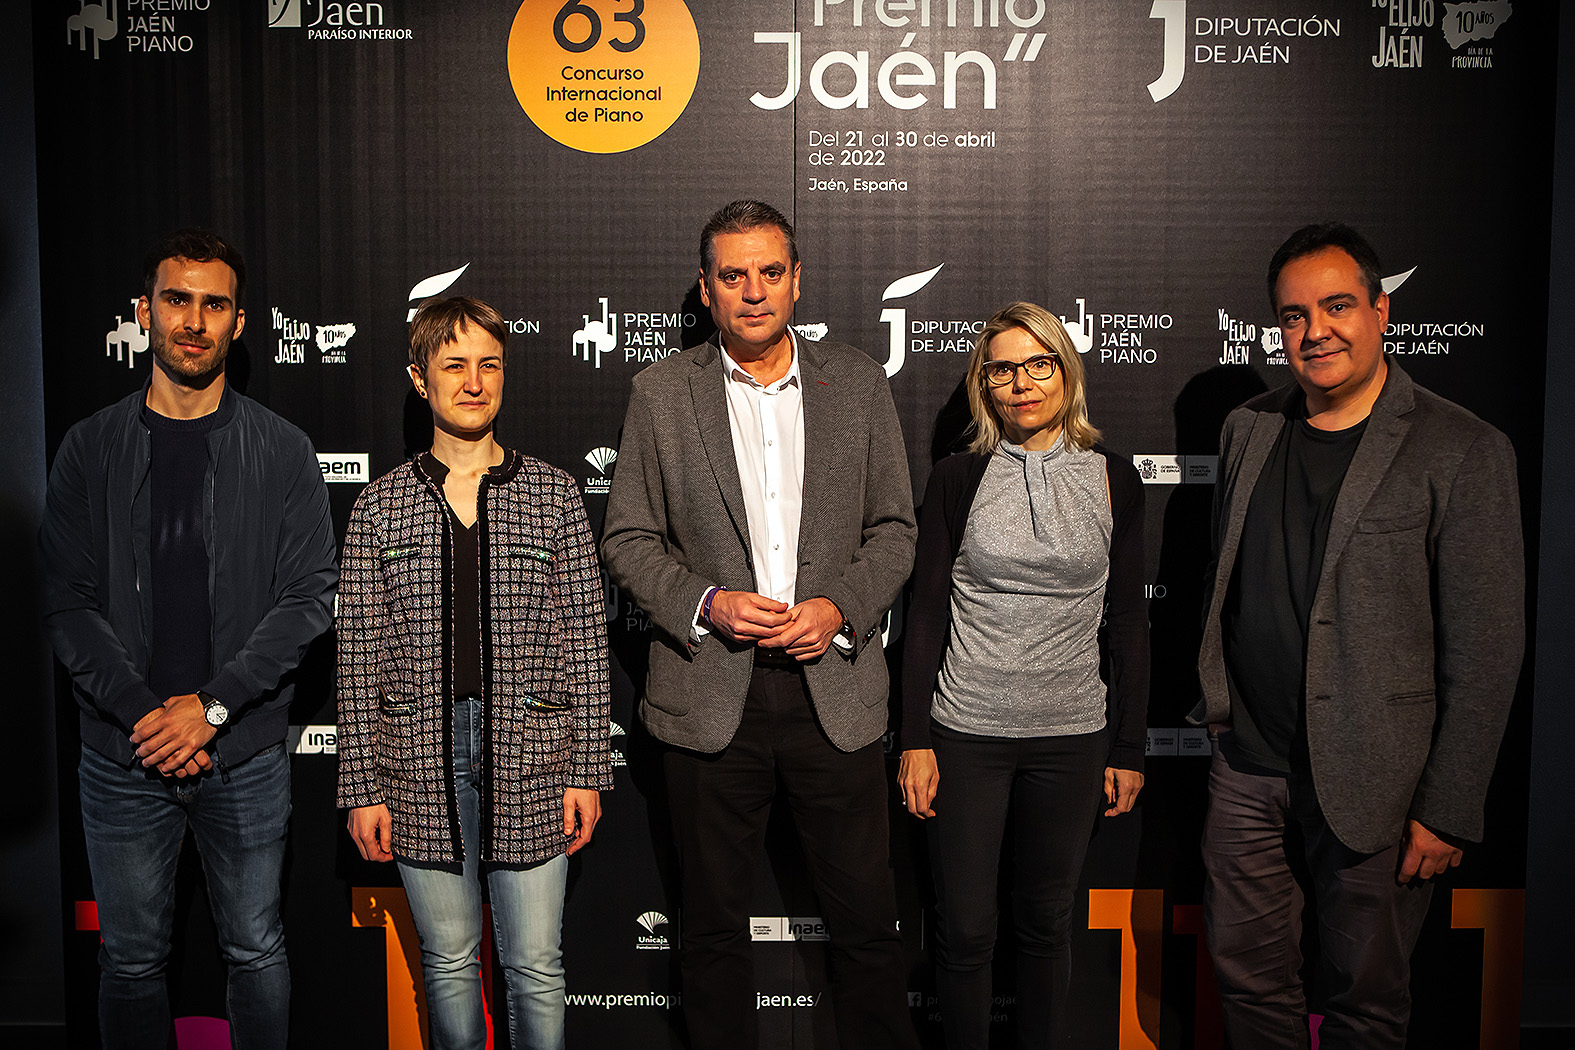 Foto de la noticia: La prueba de cámara con el Cuarteto Bretón ayudará a decidir los finalistas del 63º Premio “Jaén” de Piano de la Diputación